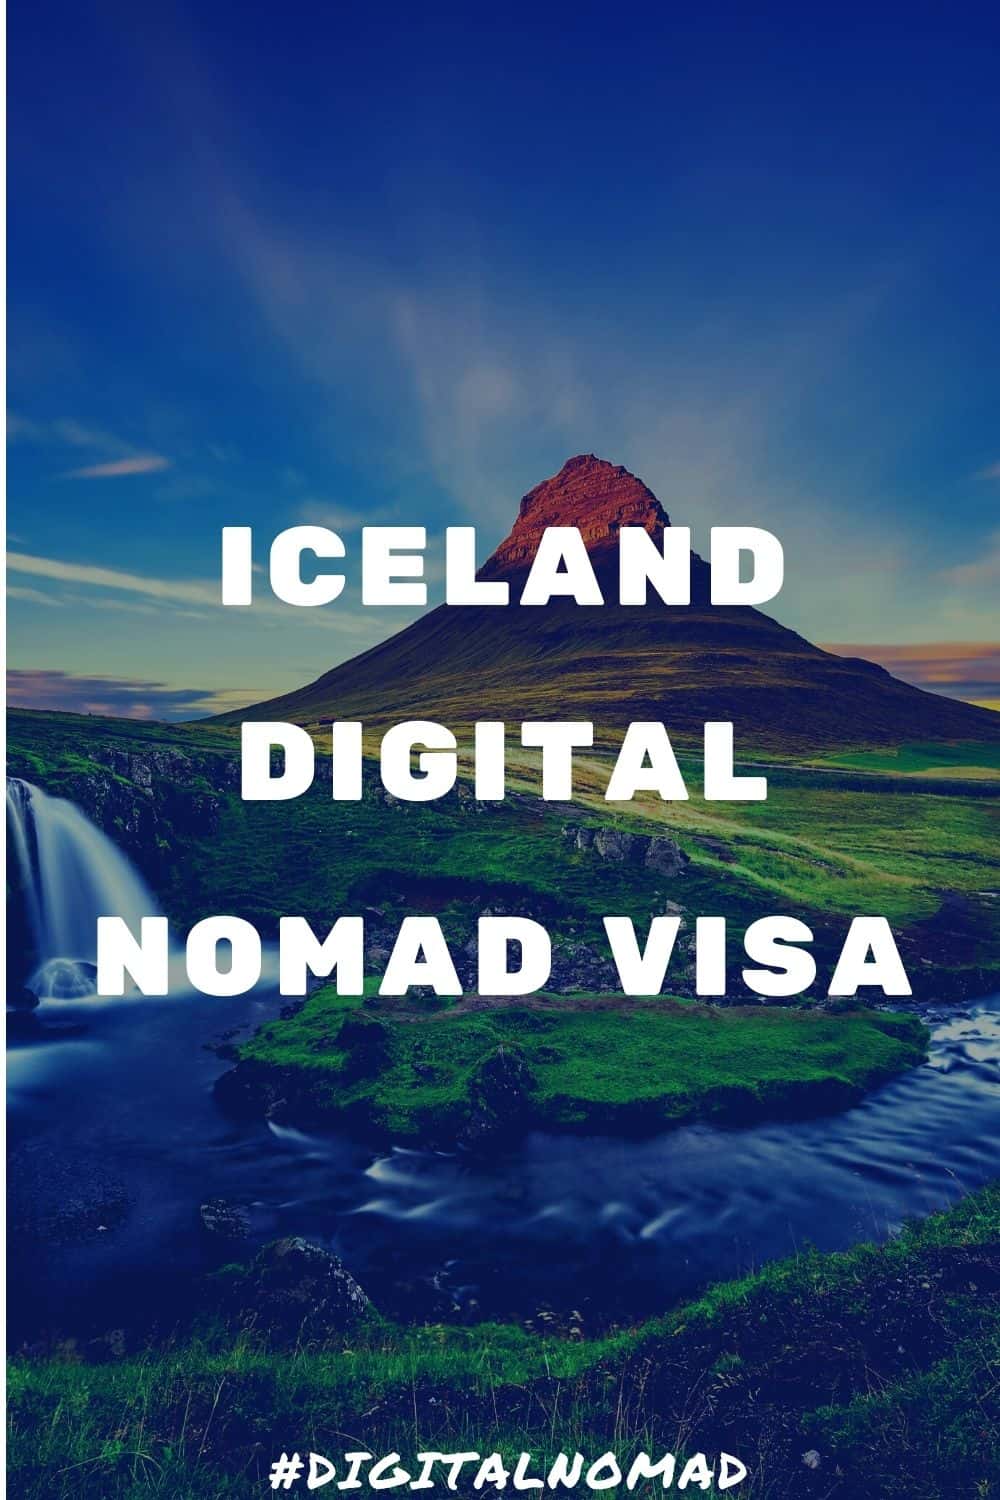 Iceland digital nomad visa – The Latest Information